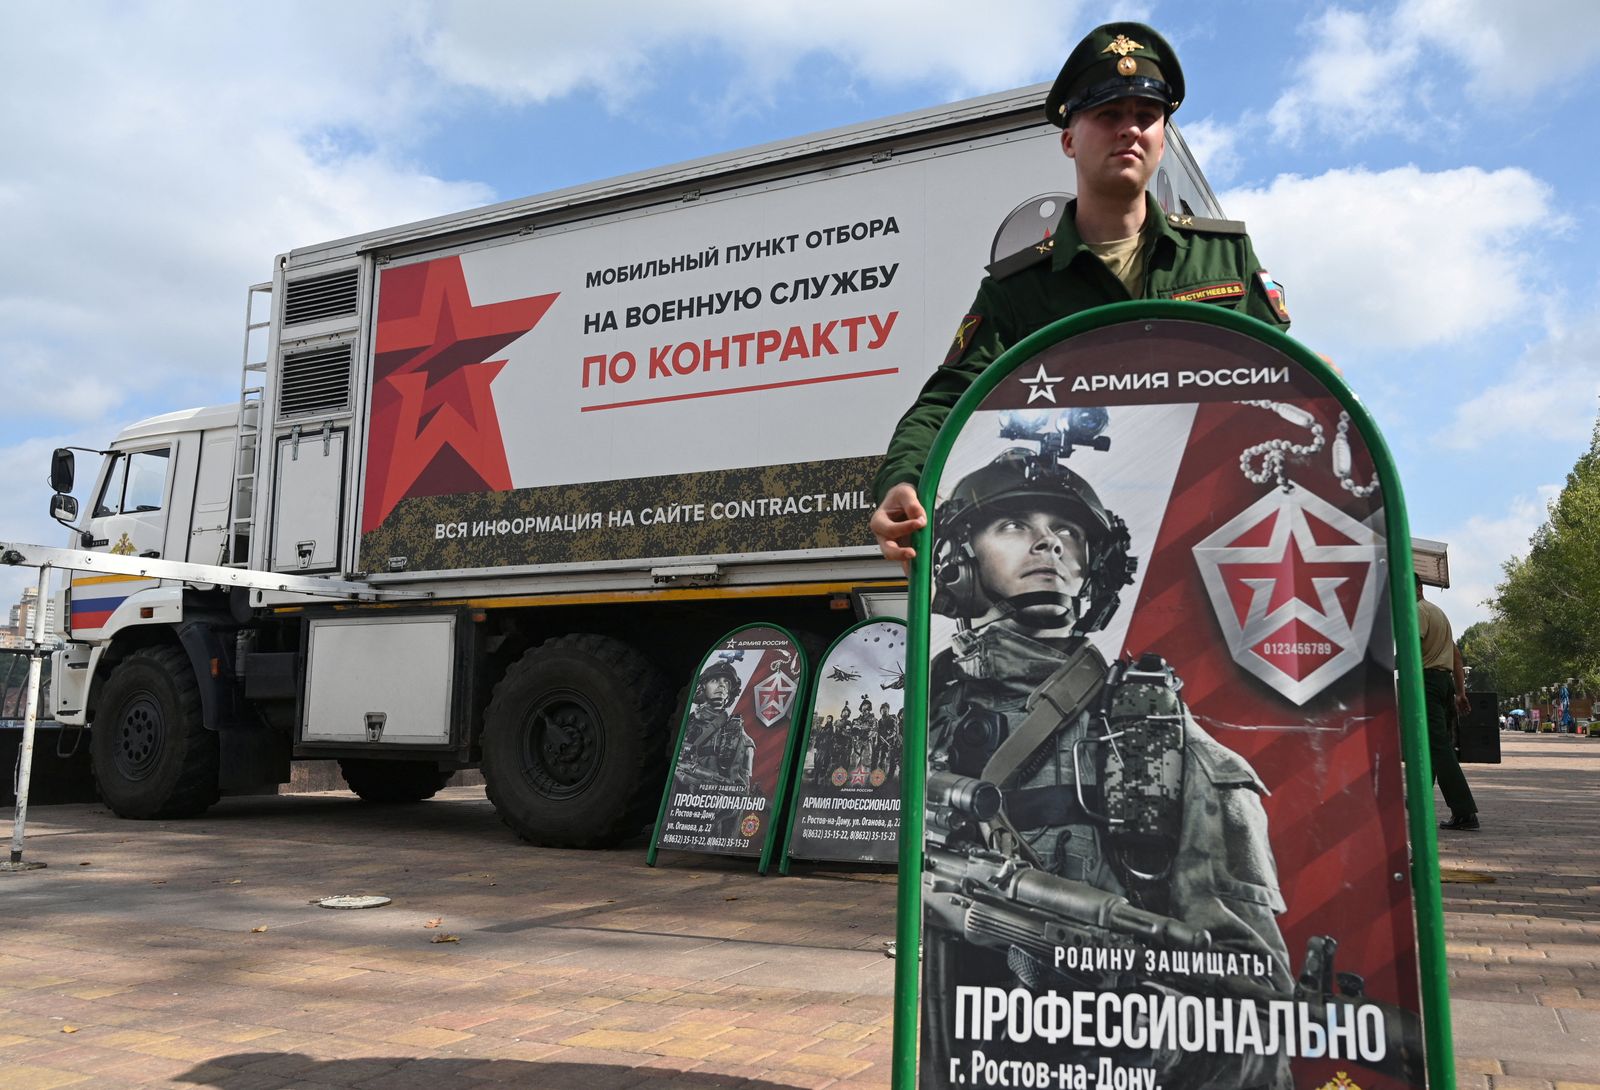 ضابط بالجيش الروسي يقف إلى جانب مكتب متنقل لتسجيل جنود الاحتياط في الخدمة بمدينة روستوف، بروسيا- 17 سبتمبر 2022 - REUTERS